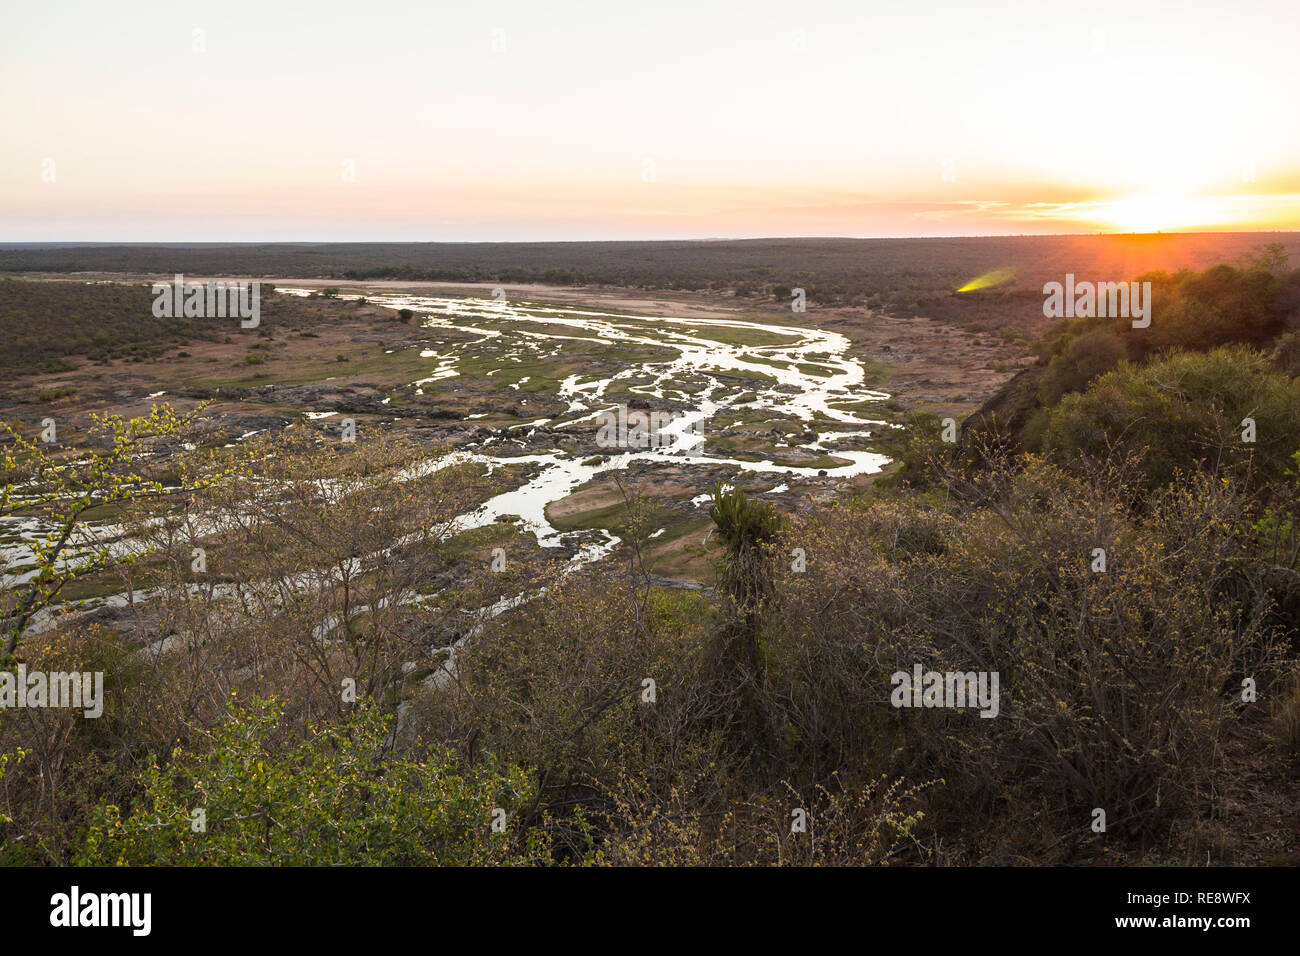 Ampia vista sul fiume Olifants dal punto di vista di Camp, Africa Foto Stock